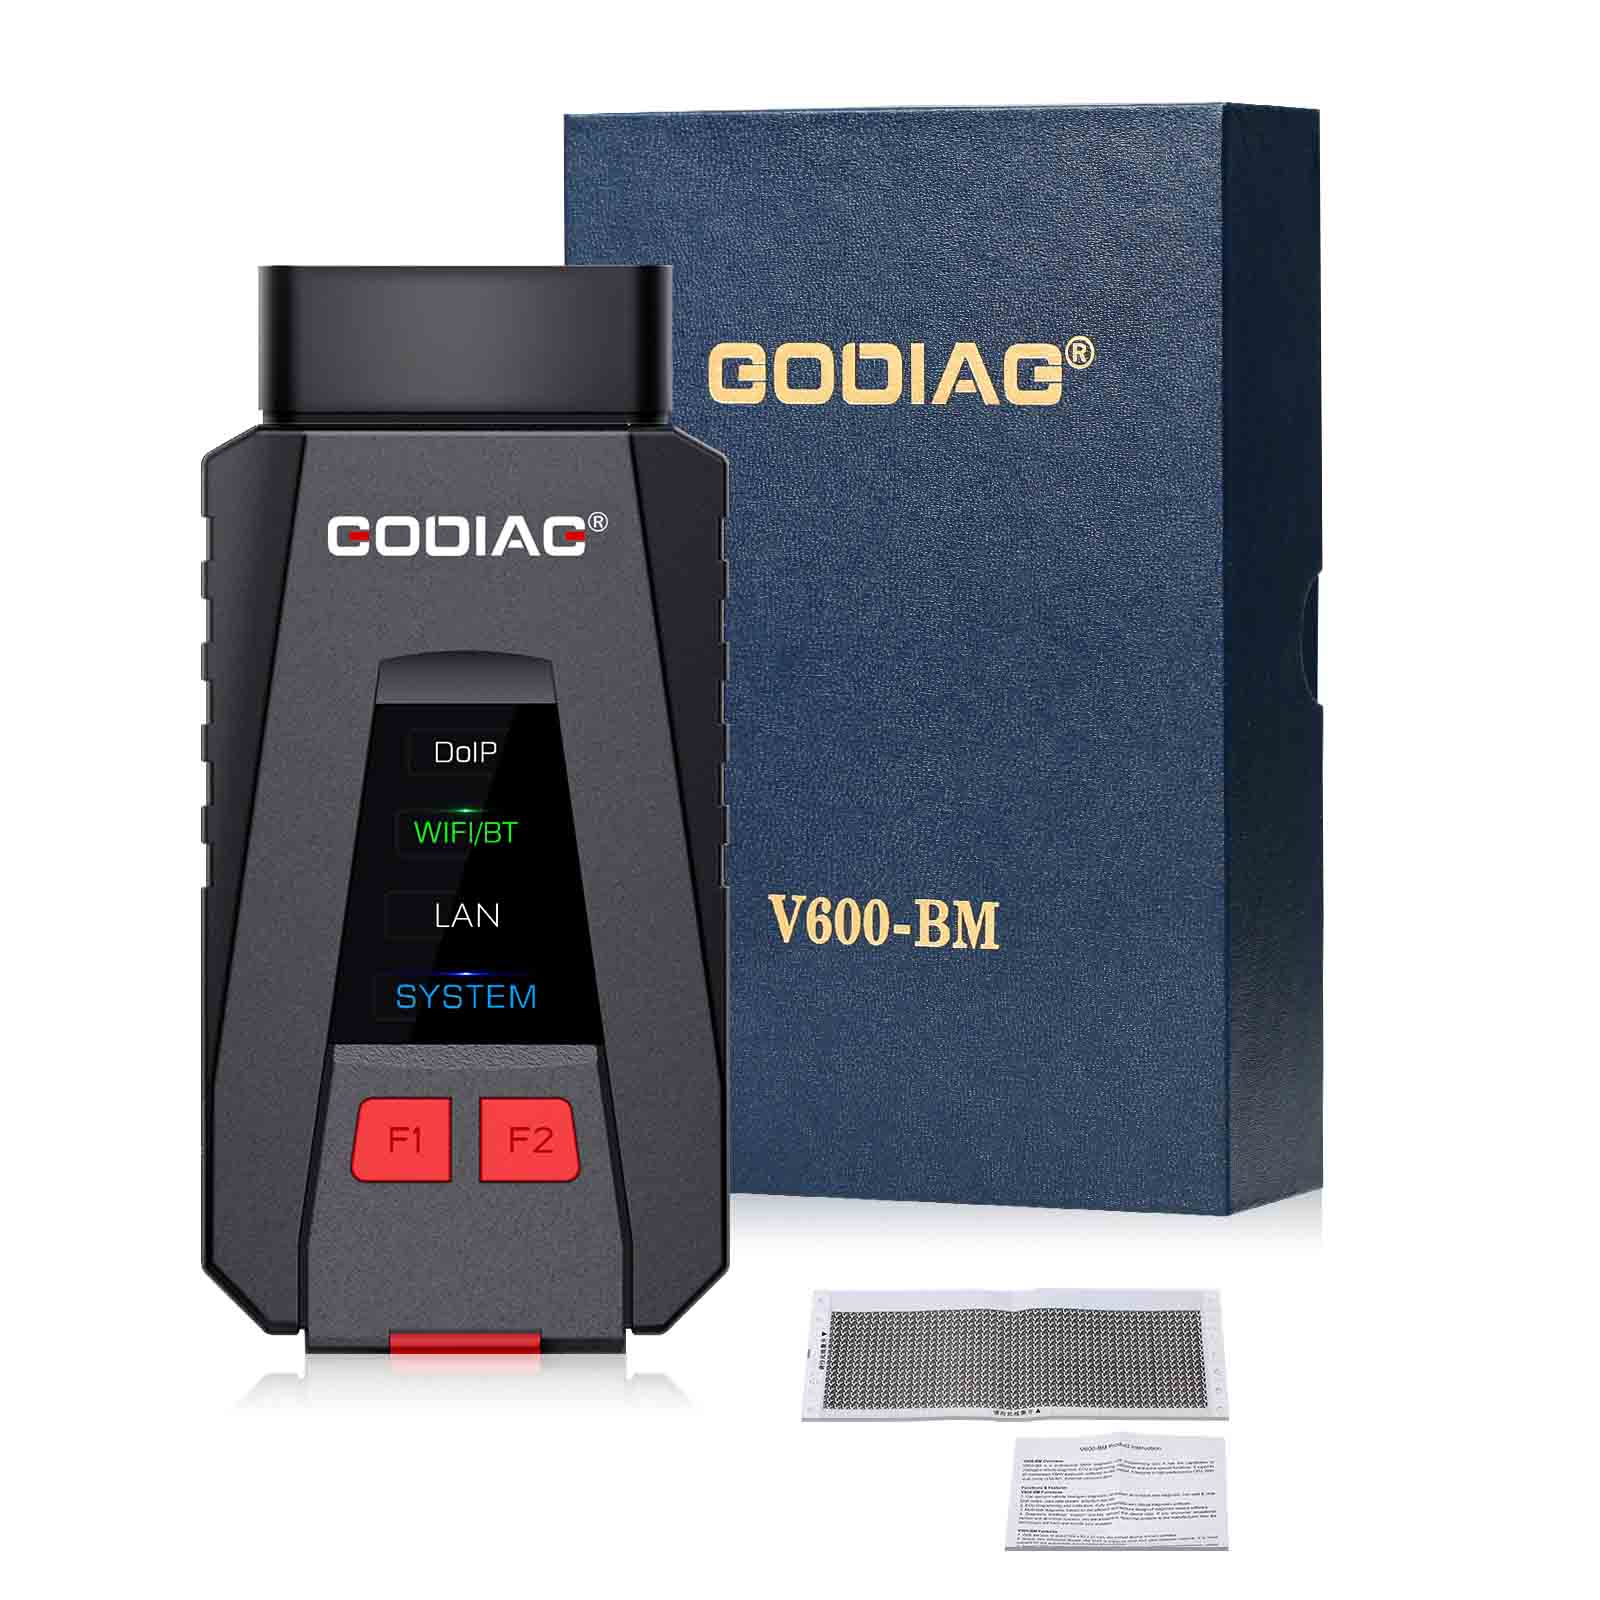  godiag-v600-bm-package